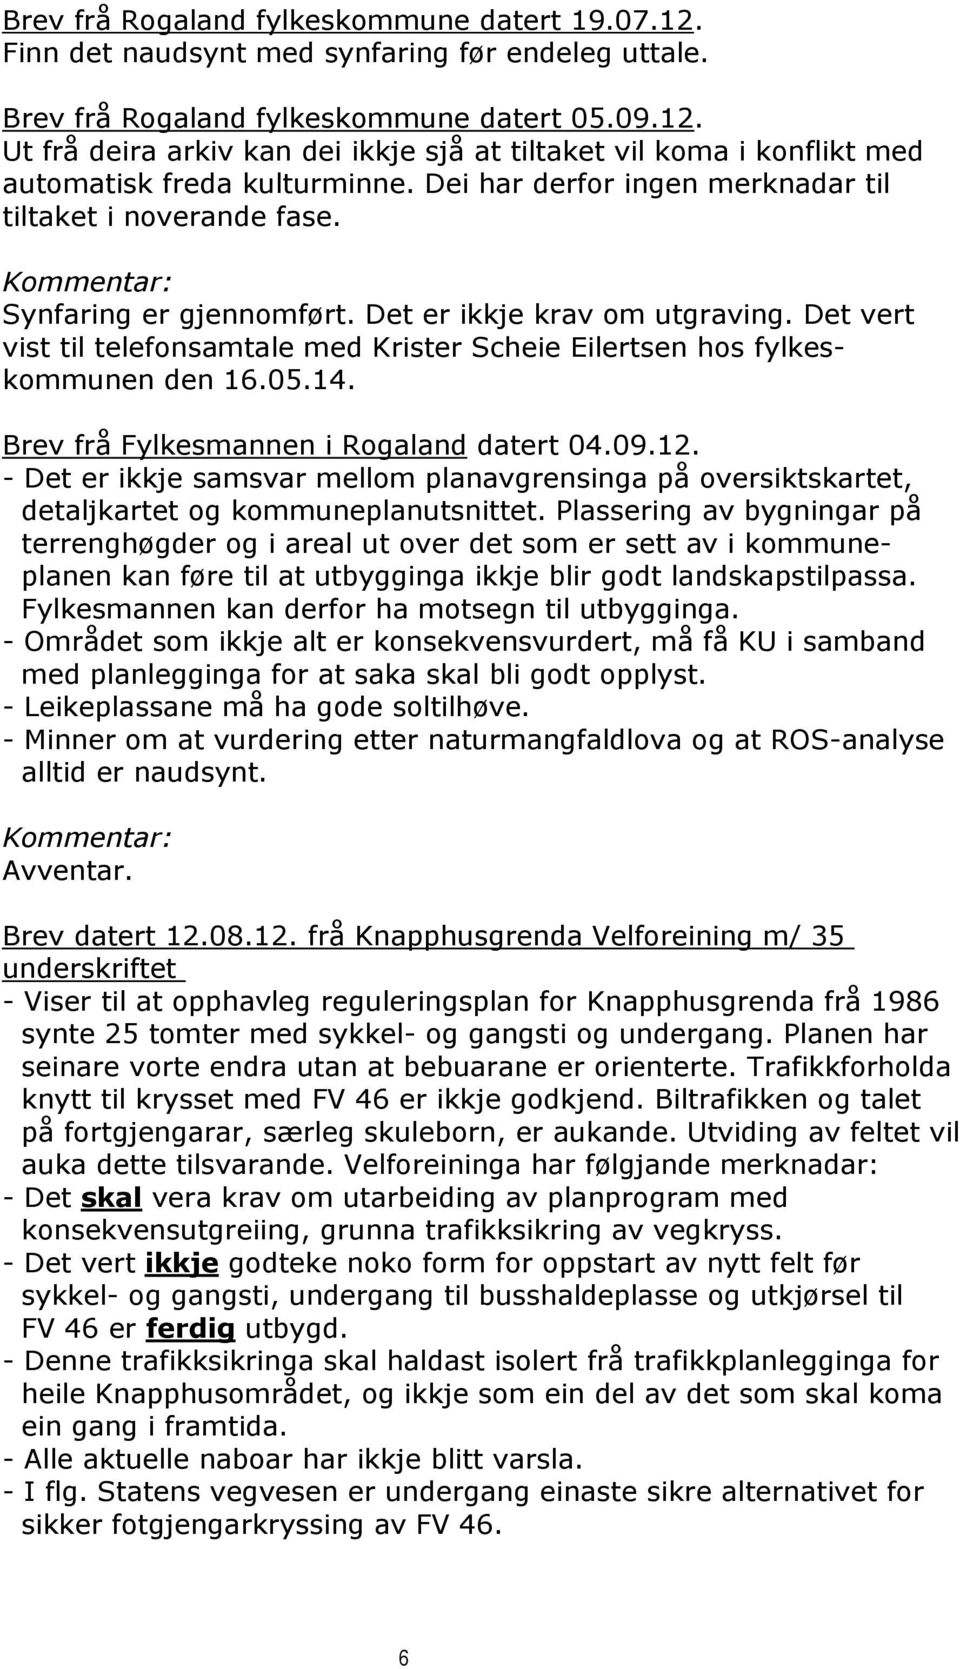 Det vert vist til telefonsamtale med Krister Scheie Eilertsen hos fylkeskommunen den 16.05.14. Brev frå Fylkesmannen i Rogaland datert 04.09.12.